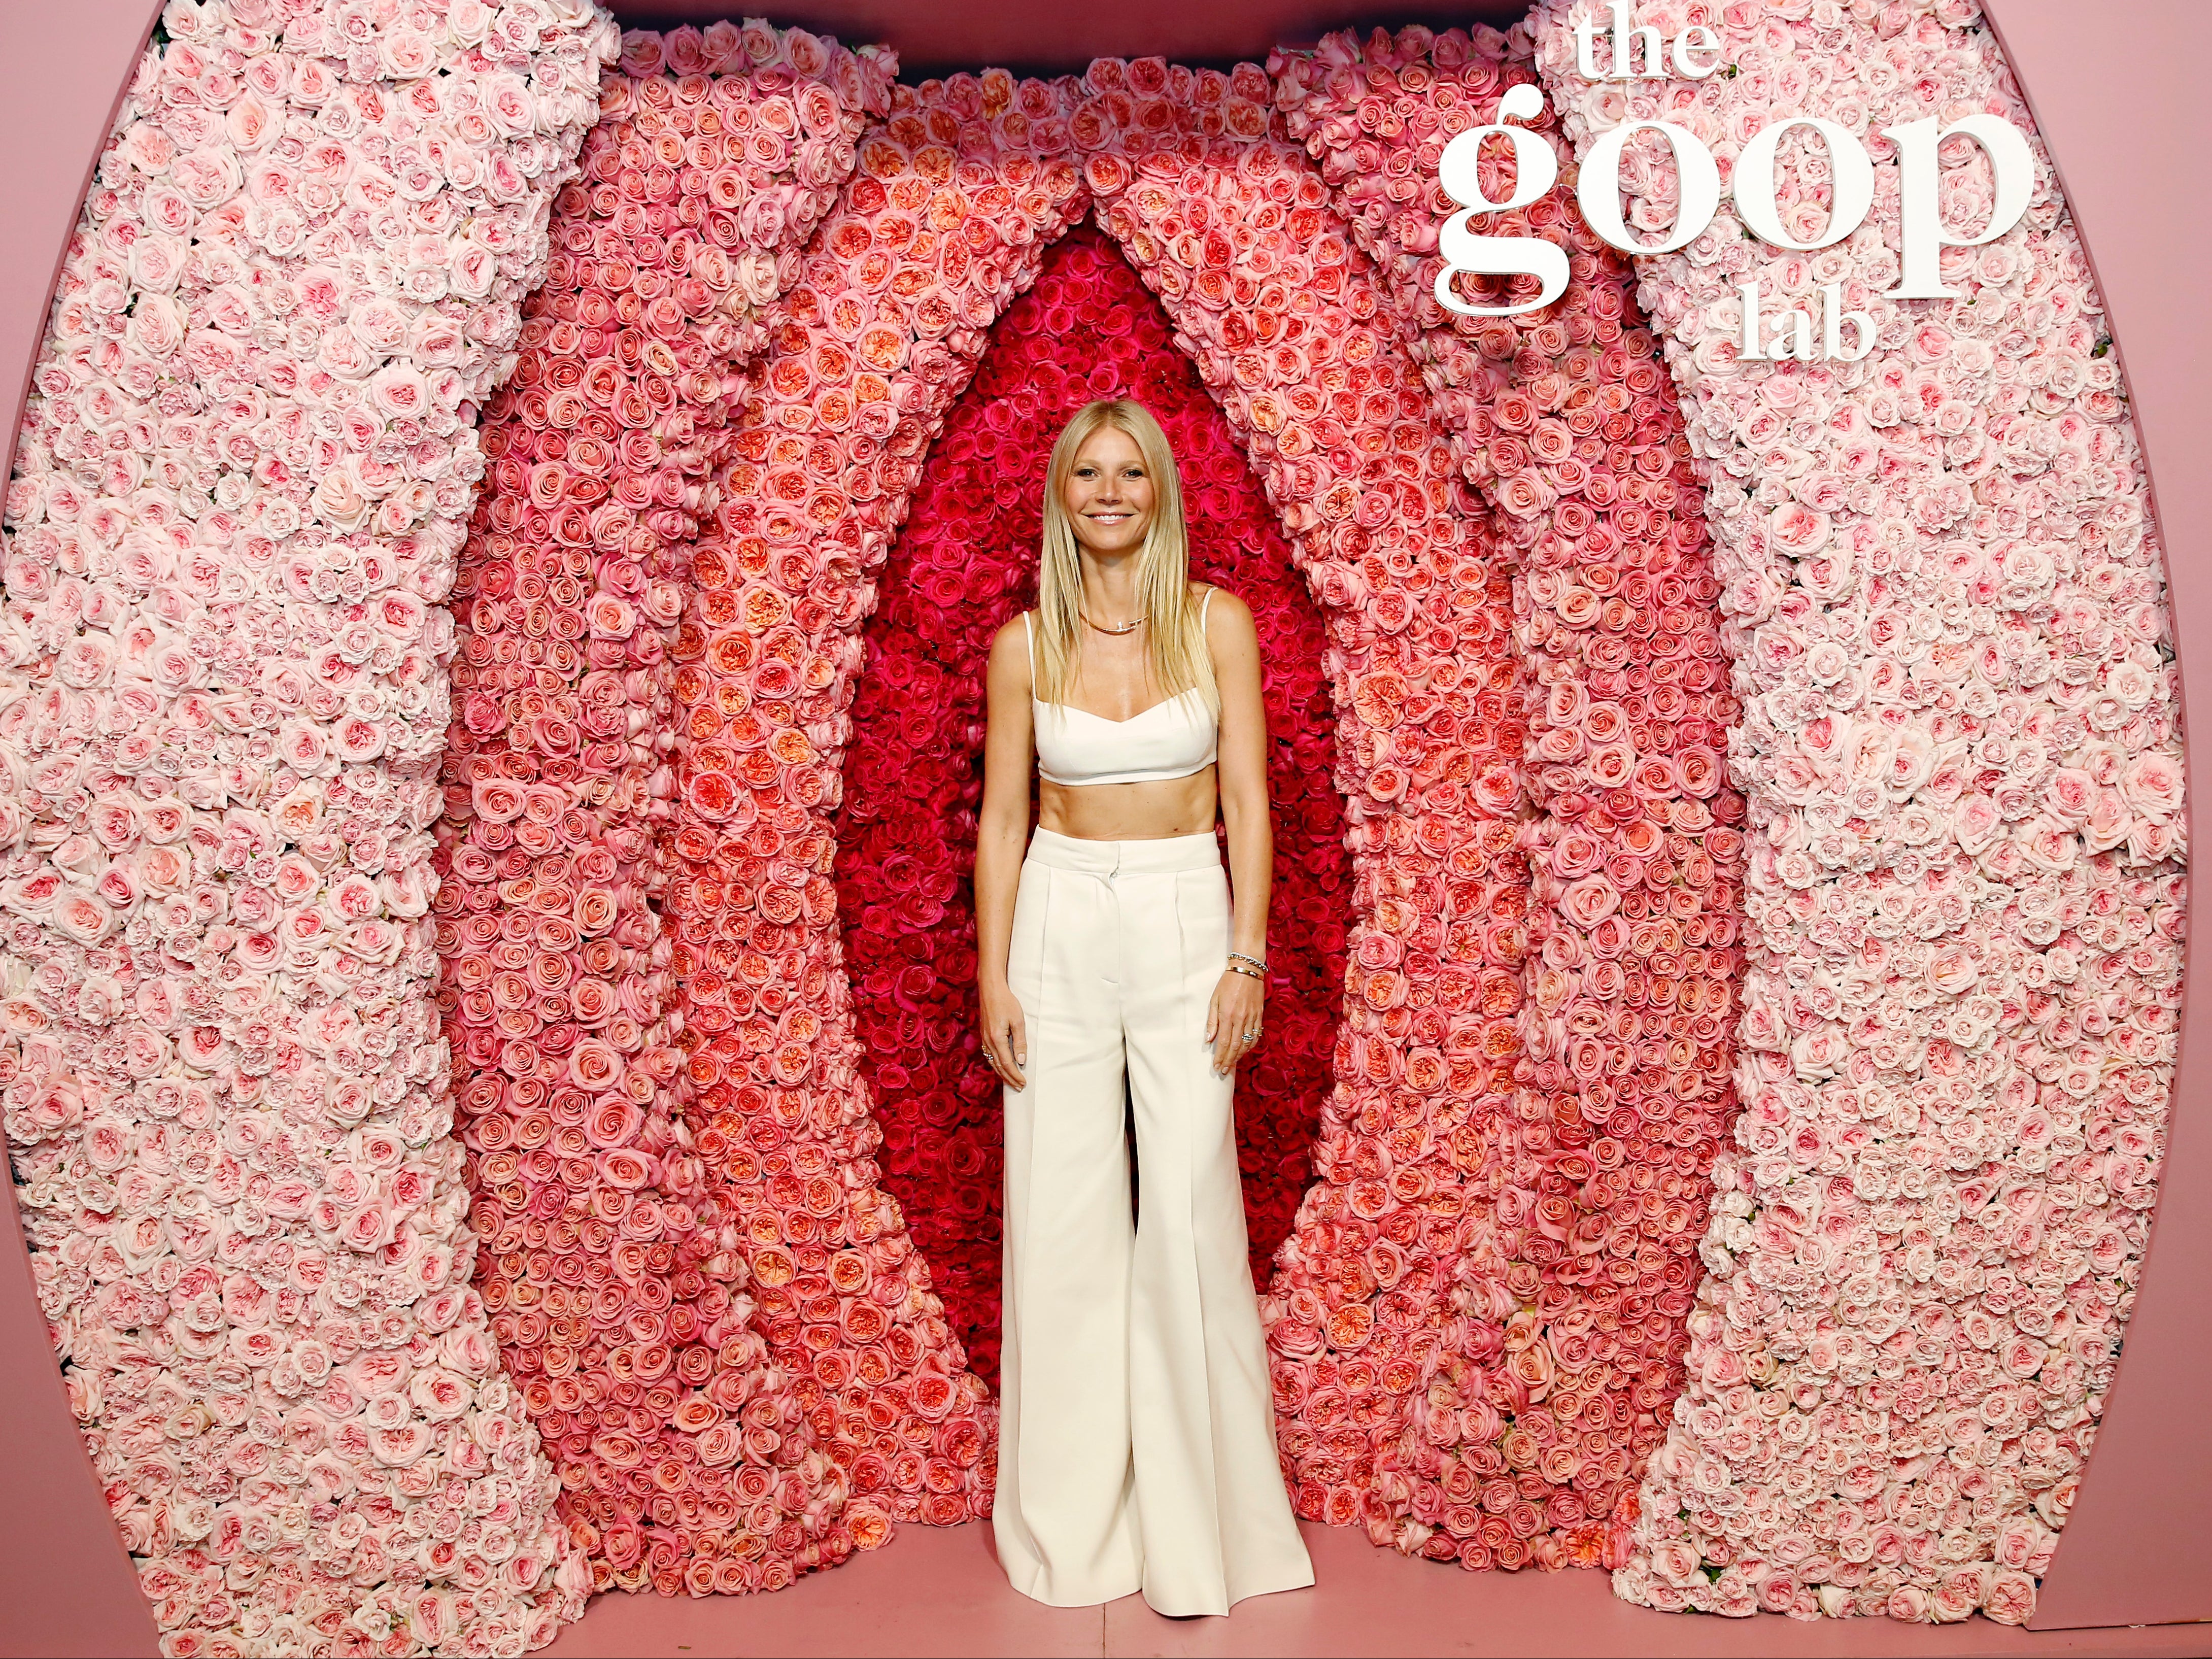 Gwyneth Paltrow asiste a la proyección especial del laboratorio goop en Los Ángeles, California, el 21 de enero de 2020